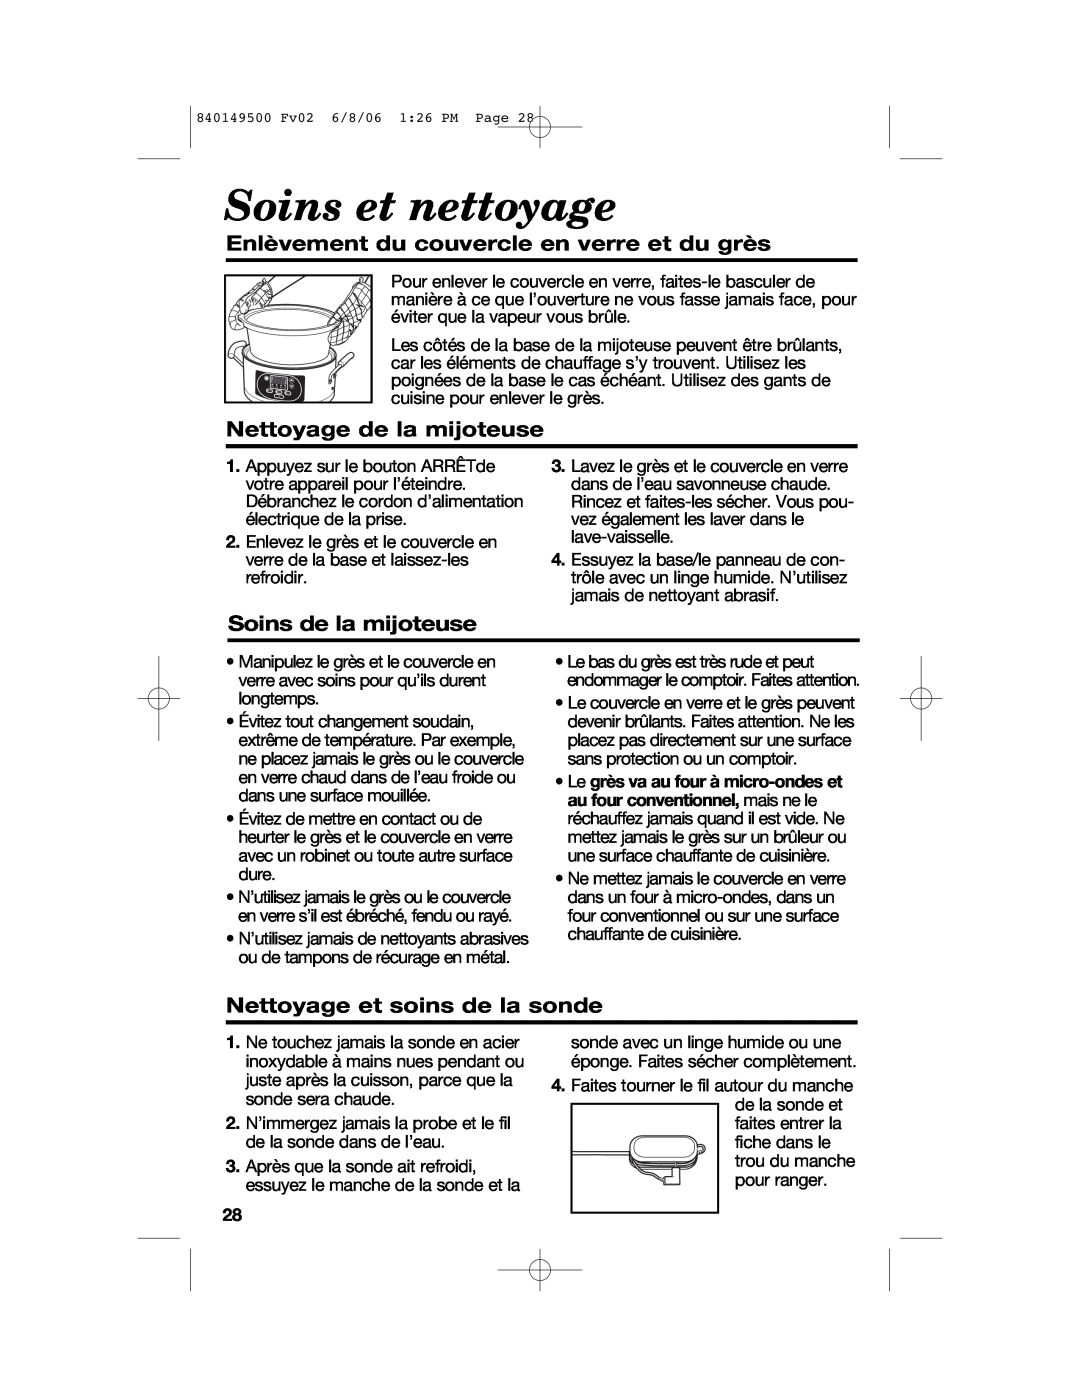 Proctor-Silex 840149500 manual Soins et nettoyage, Enlèvement du couvercle en verre et du grès, Nettoyage de la mijoteuse 